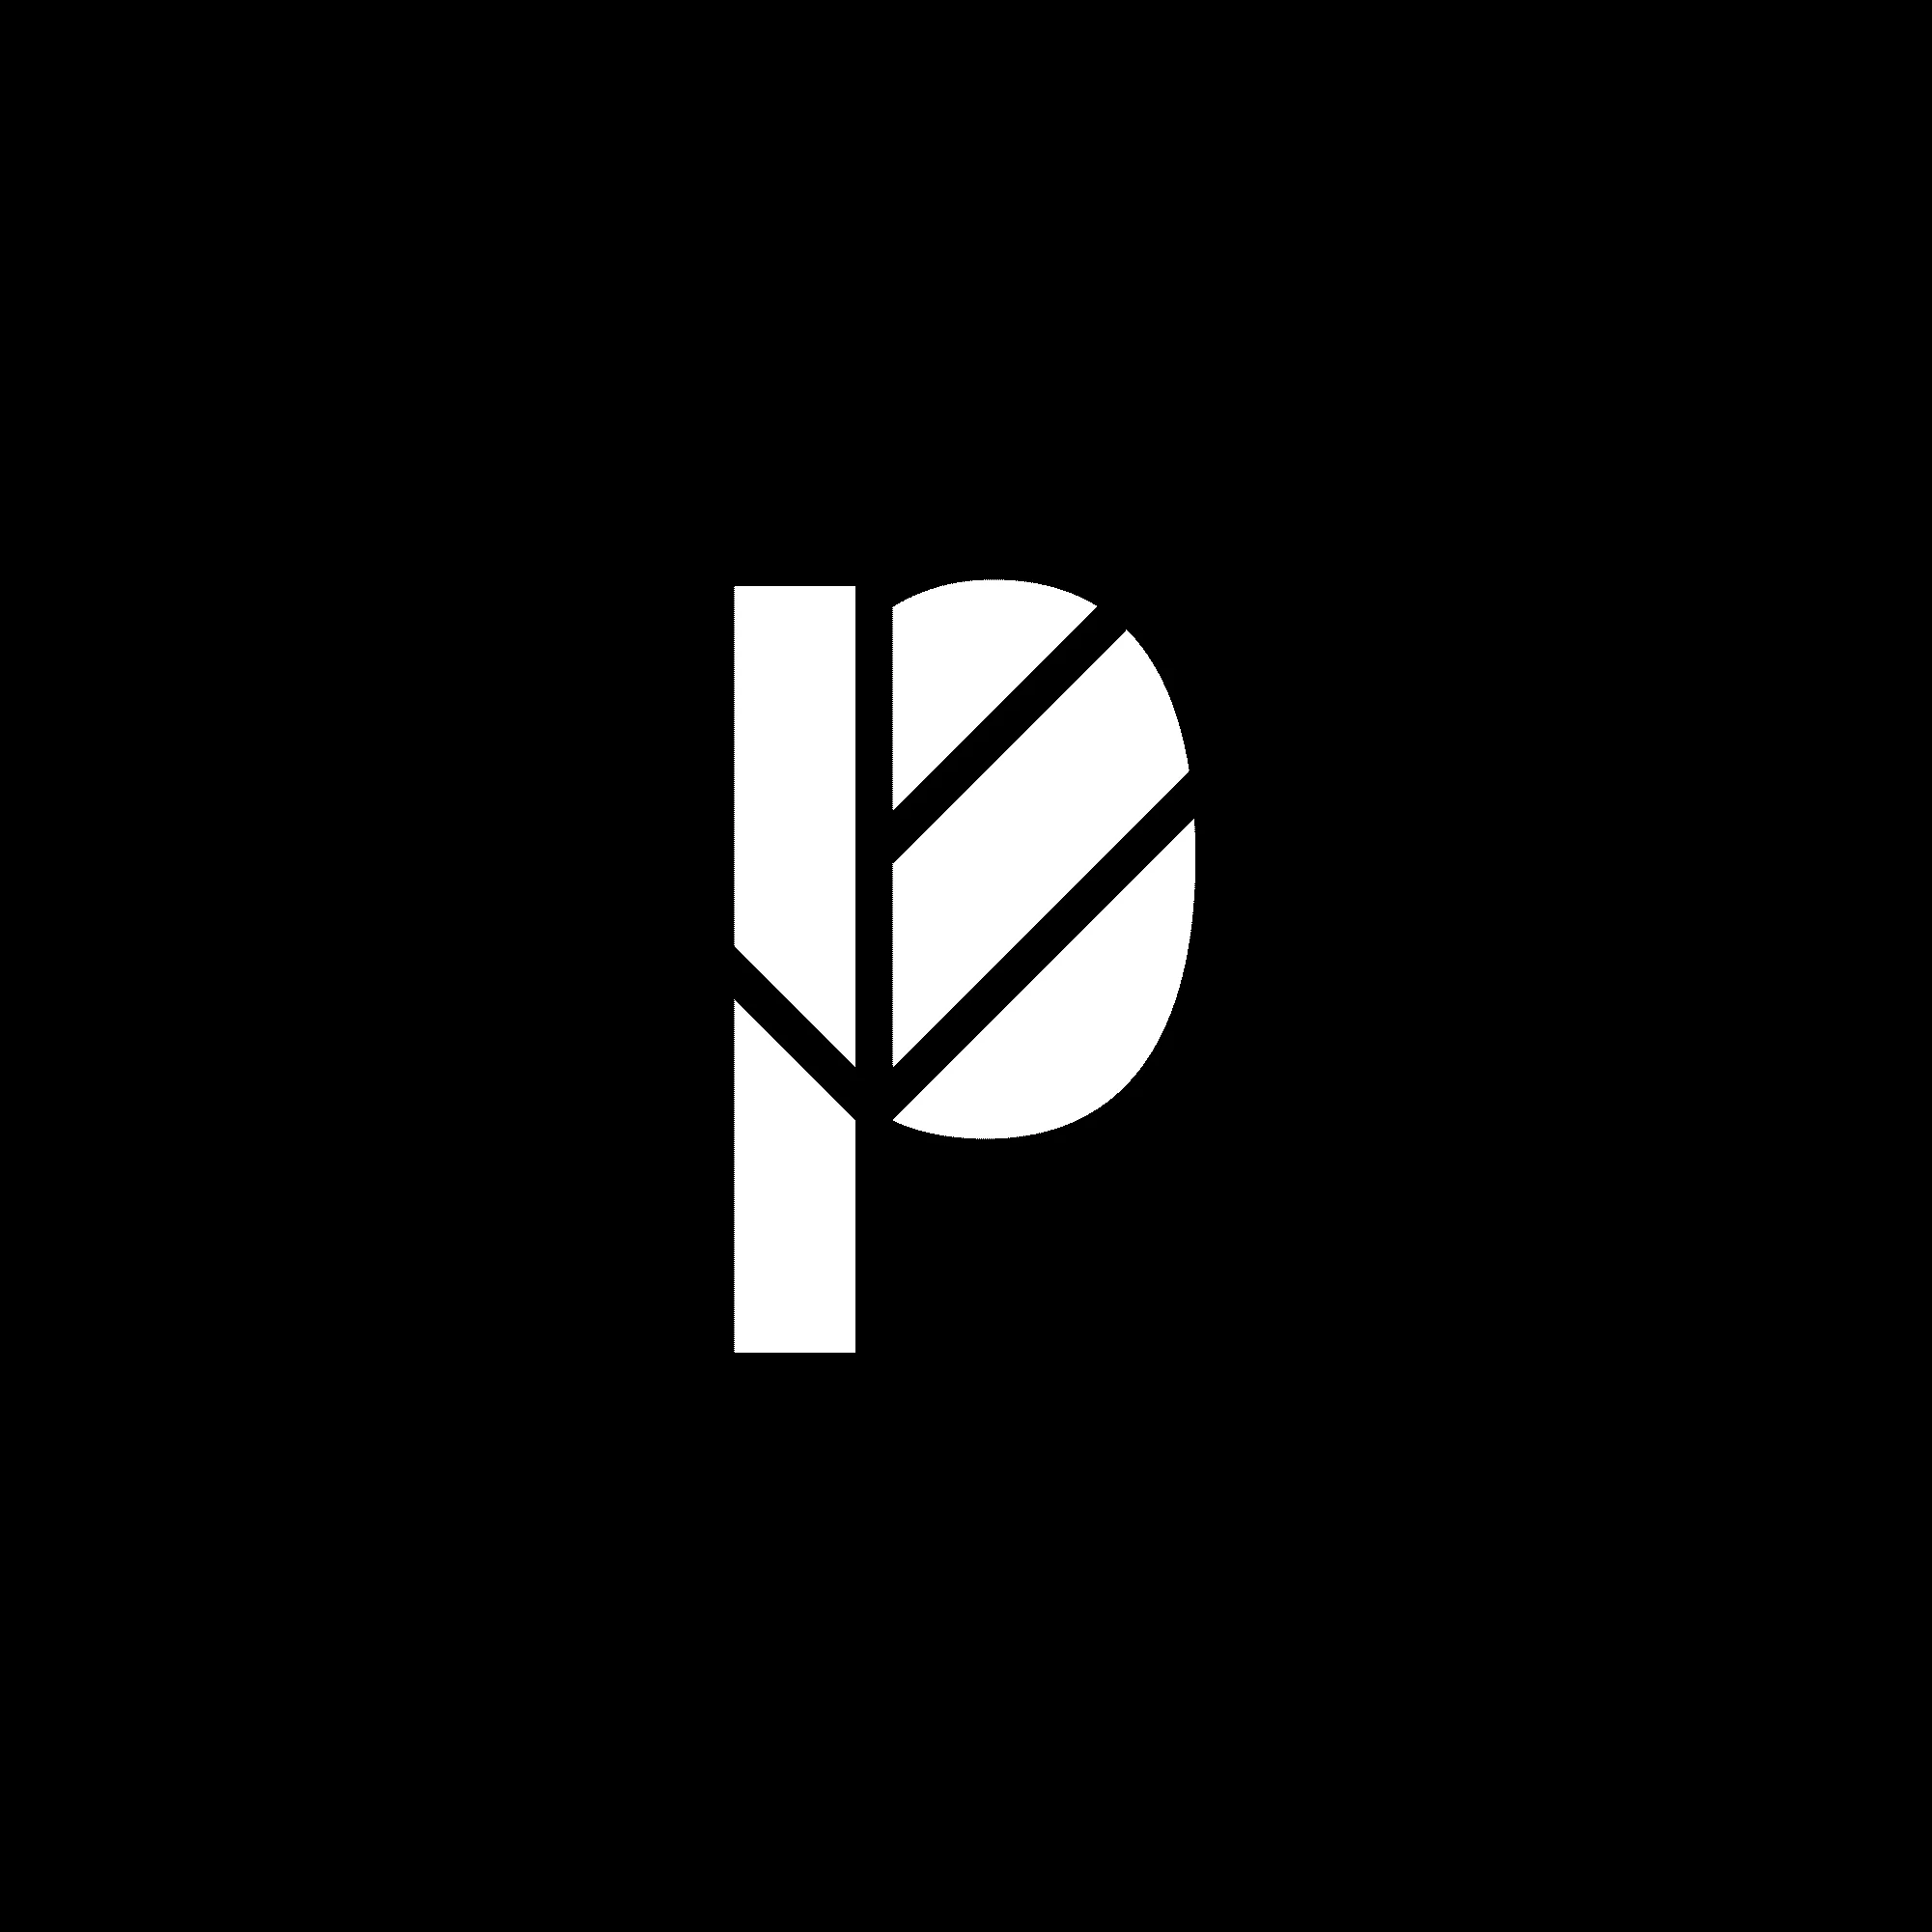 Branding logo design lettering "P" with a leaf shape